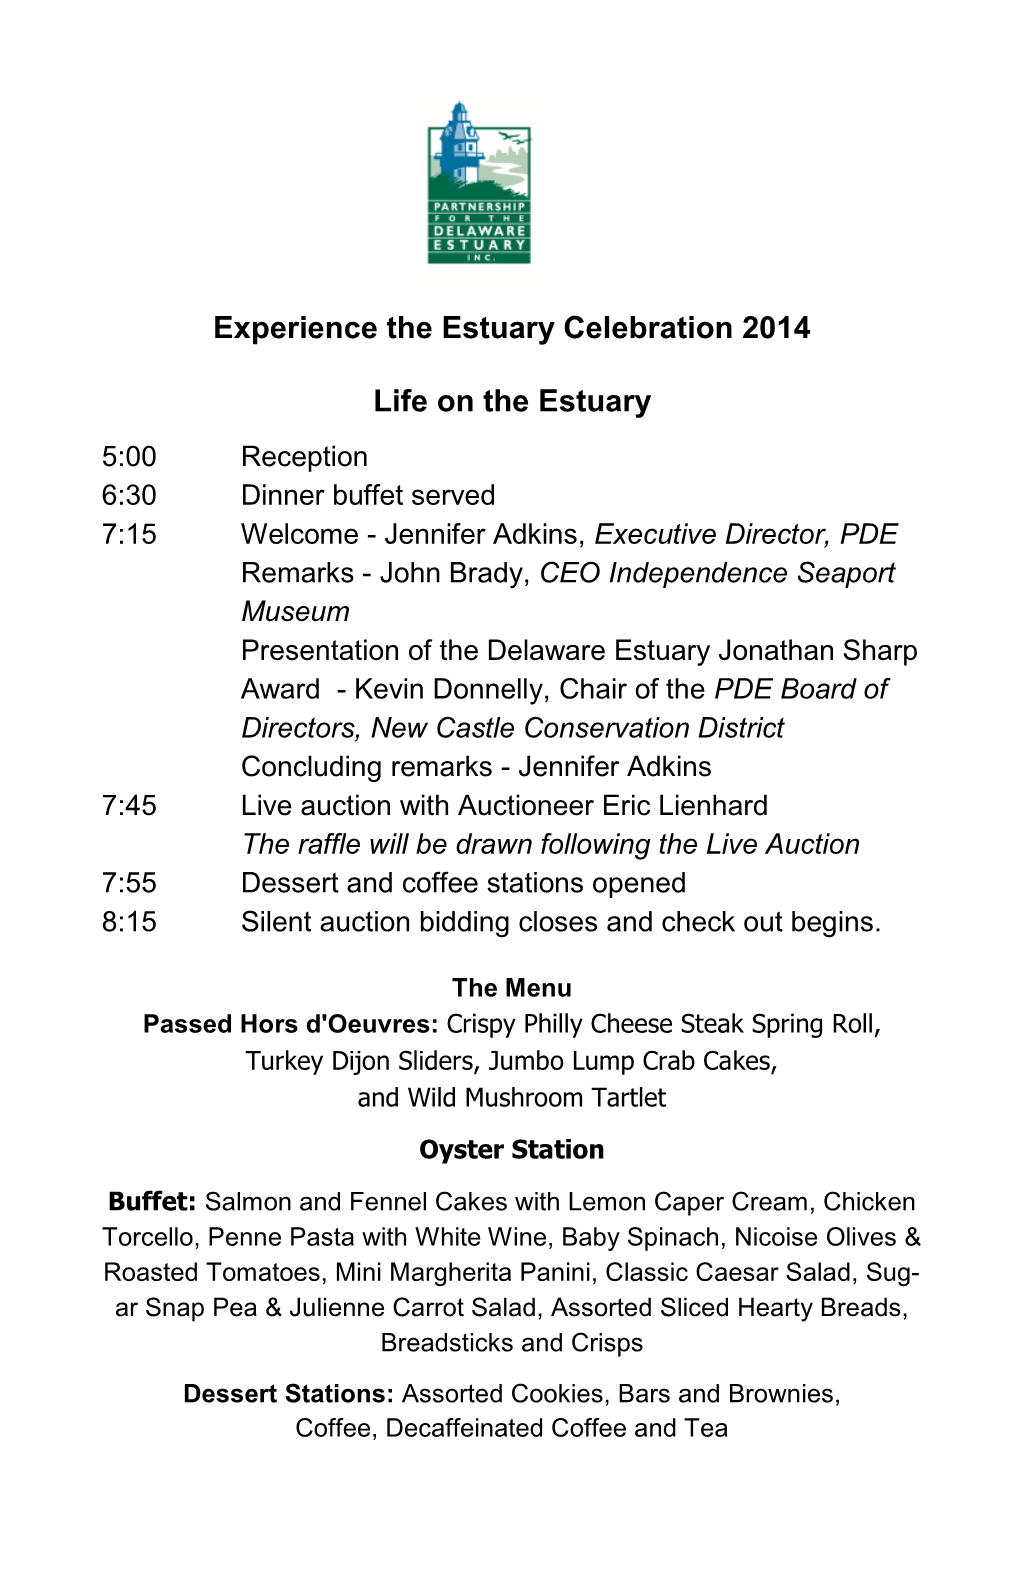 Experience the Estuary Celebration 2014 Life on the Estuary